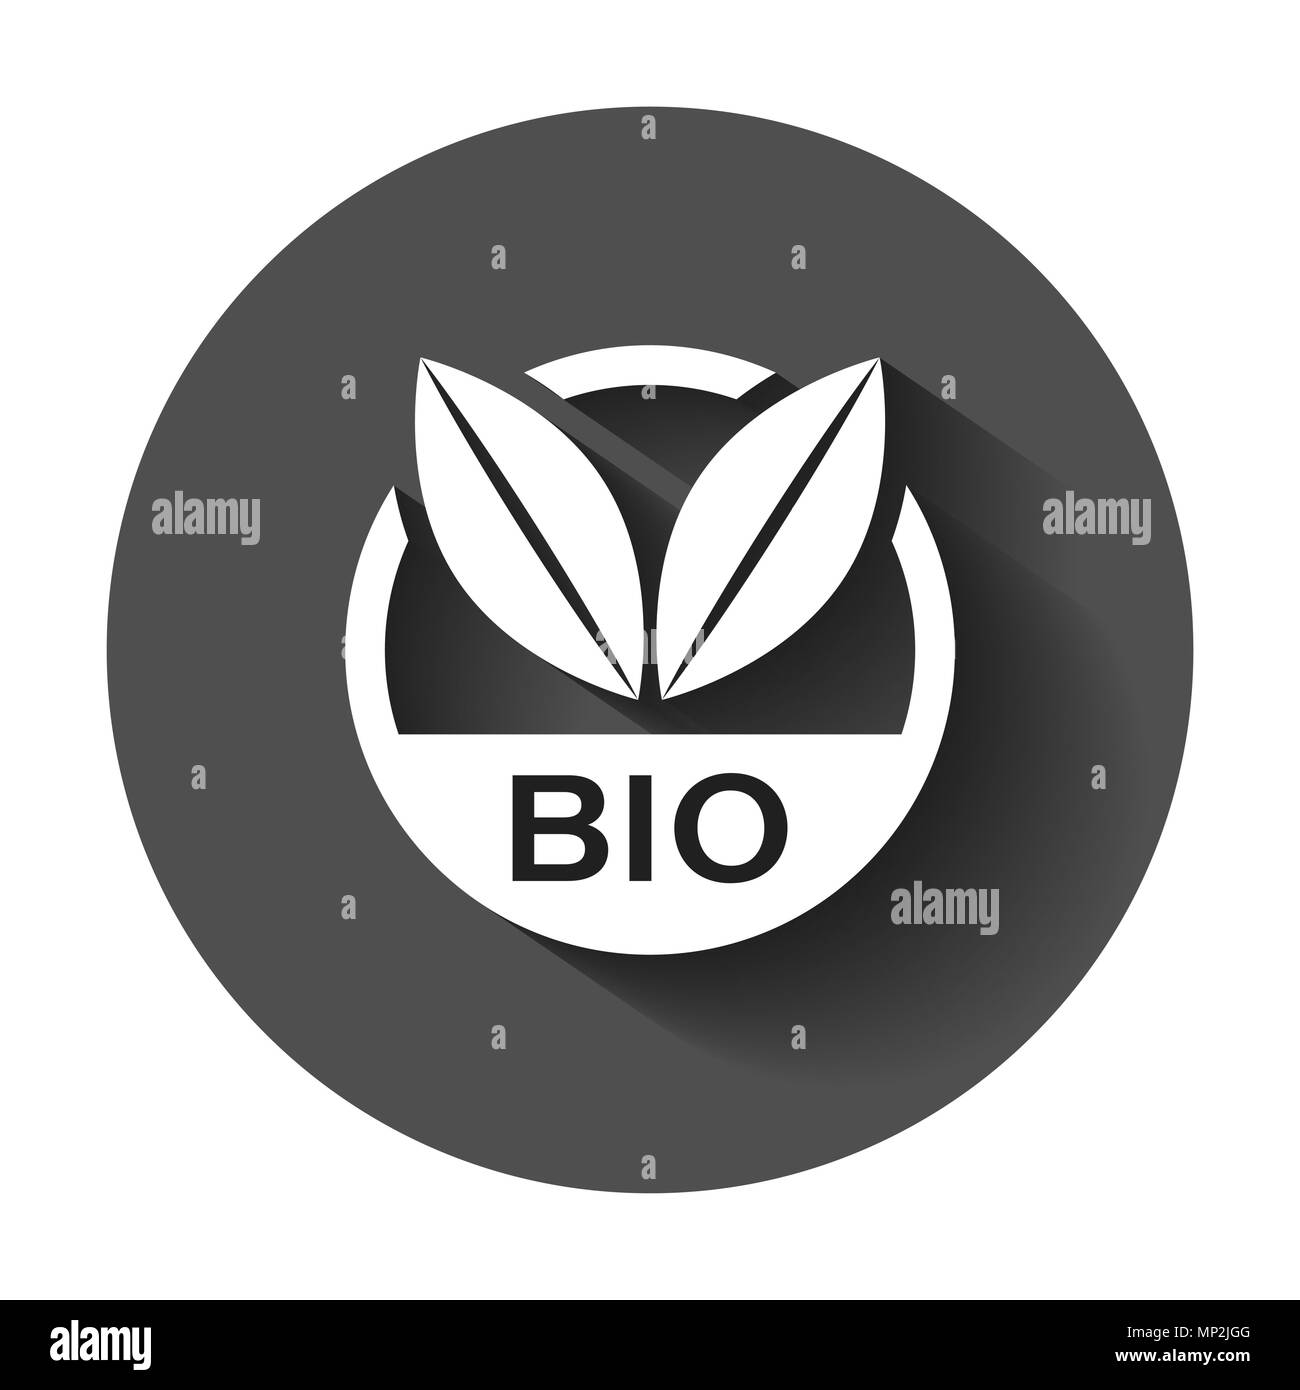 Bio etichetta badge icone vettoriali in stile appartamento. Eco prodotto organico timbro illustrazione con lunga ombra. Eco alimenti naturali nozione. Illustrazione Vettoriale